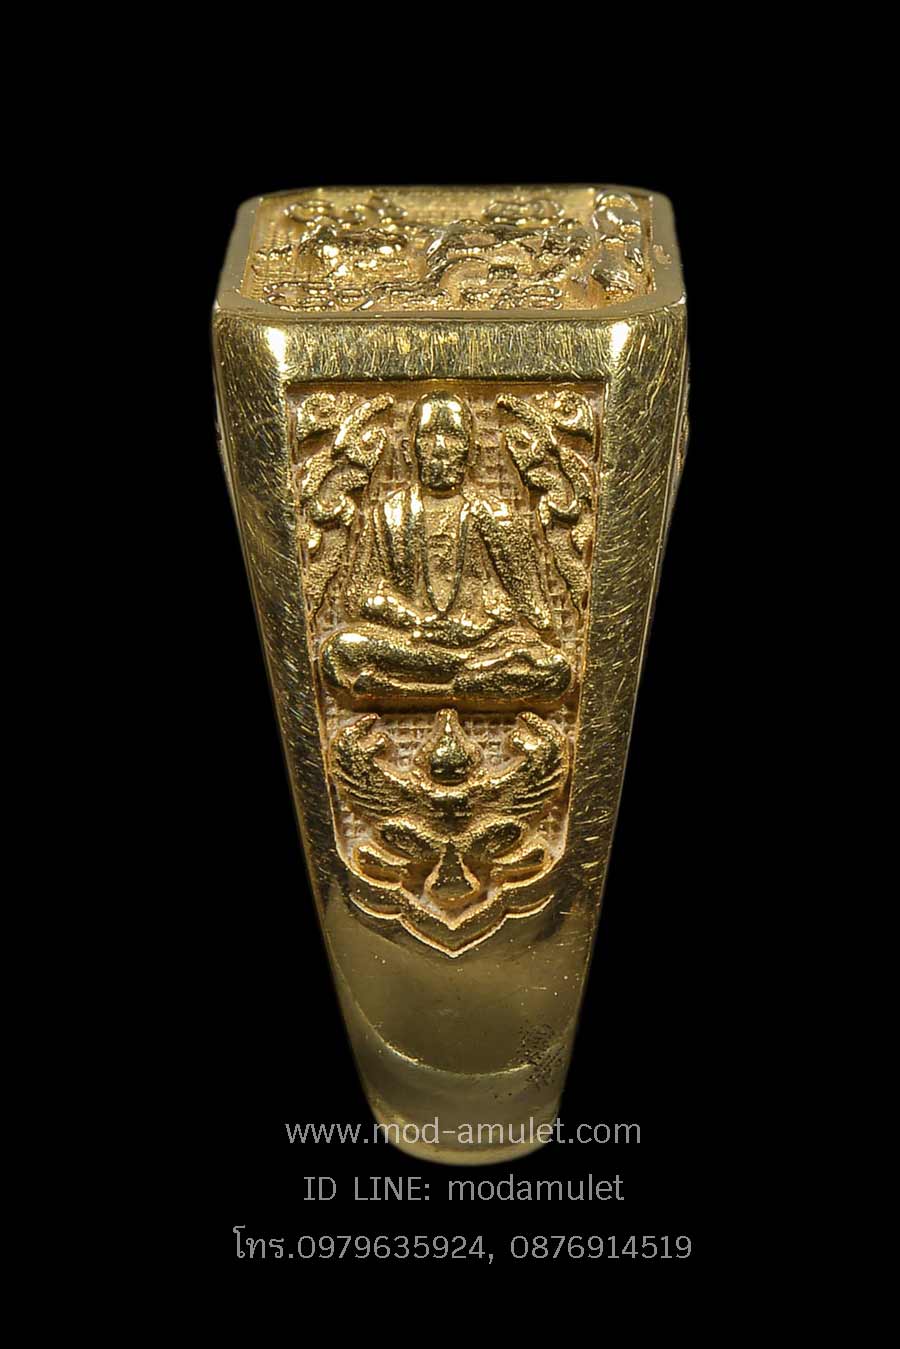 แหวนพระจักรพรรดิ์เนื้อทองคำ ปี 2555 หลวงตาม้า 2